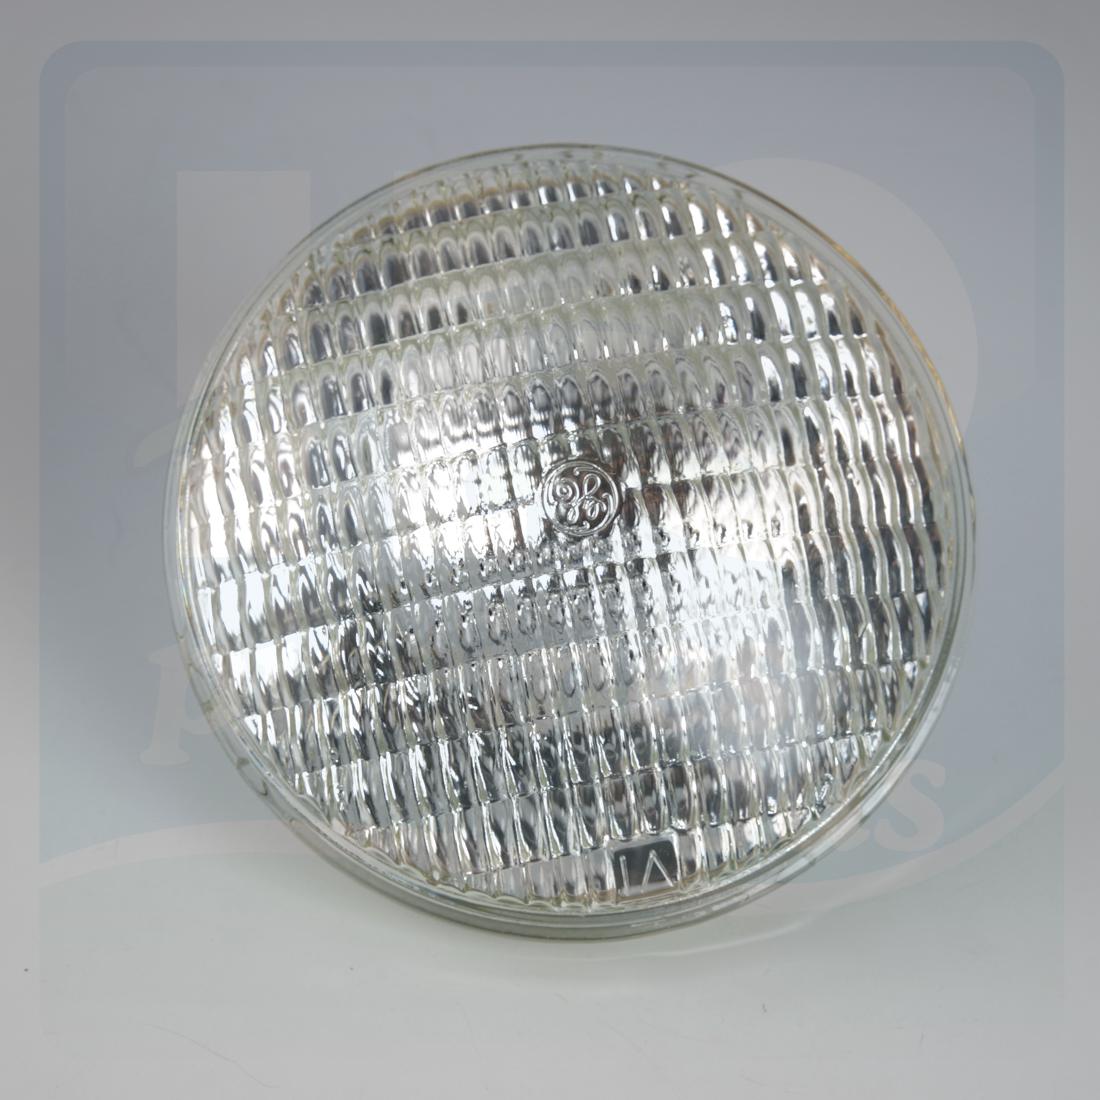 Lampe blanche 12 V / 300 W pour projecteur de piscine - H2o Piscines & Spas